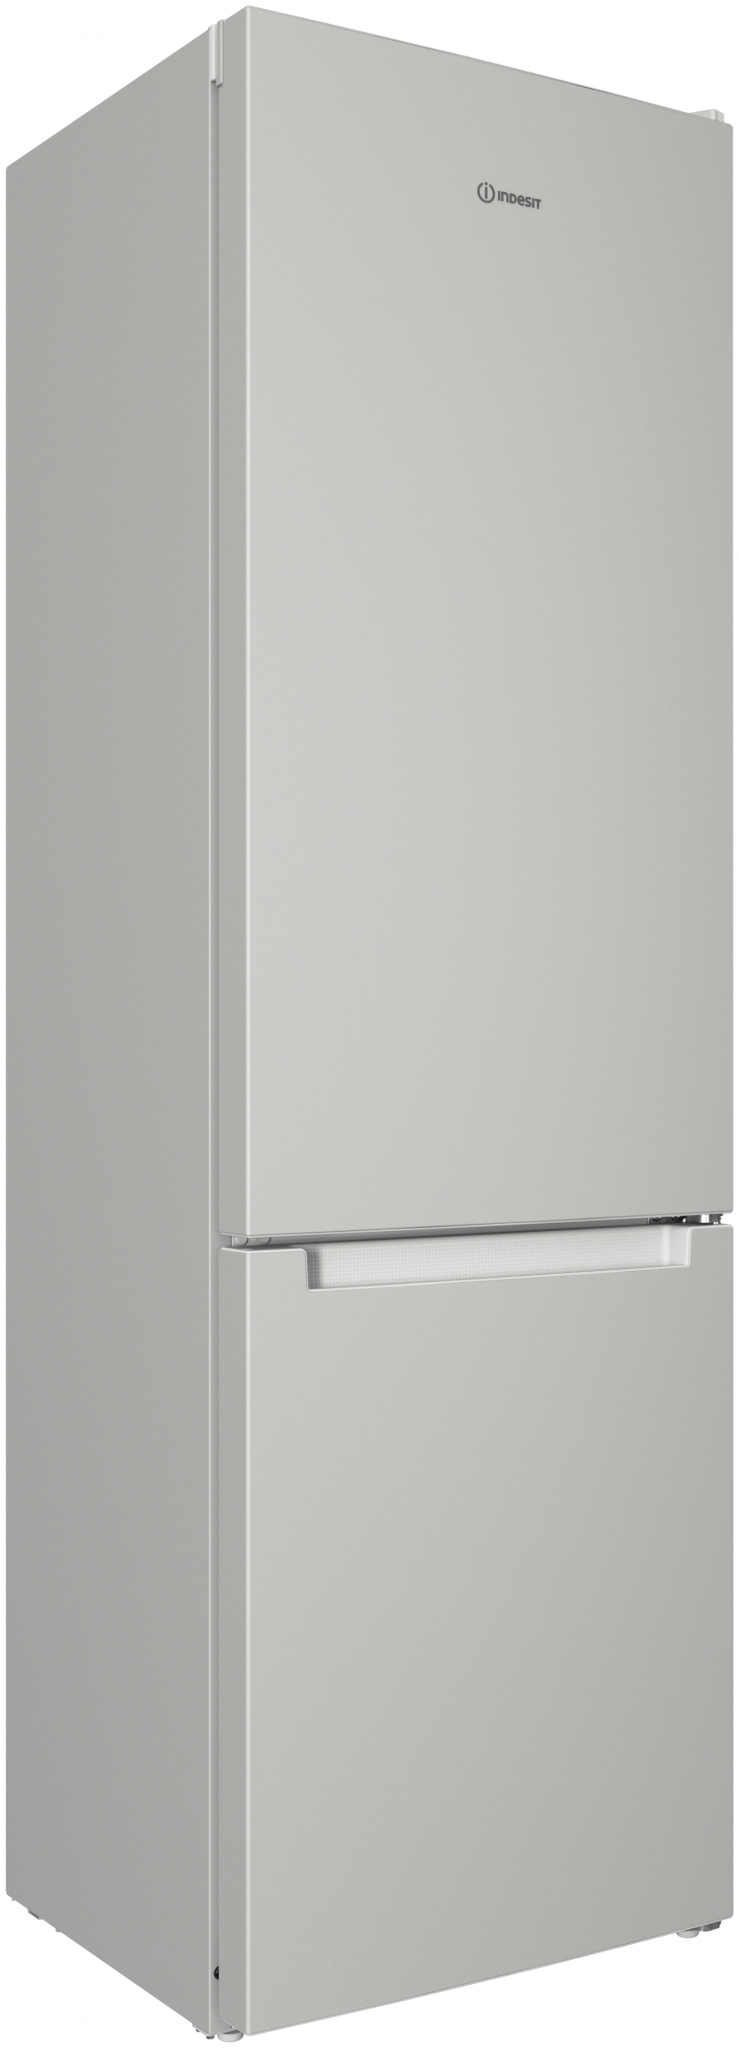 Hotpoint ariston hts 7200. Холодильник Zarget ZRB 360ds1im. Холодильник Zarget ZRB 310ns1im. Холодильник Haier cef535awg. Холодильник Shivaki SHRF-335ds.